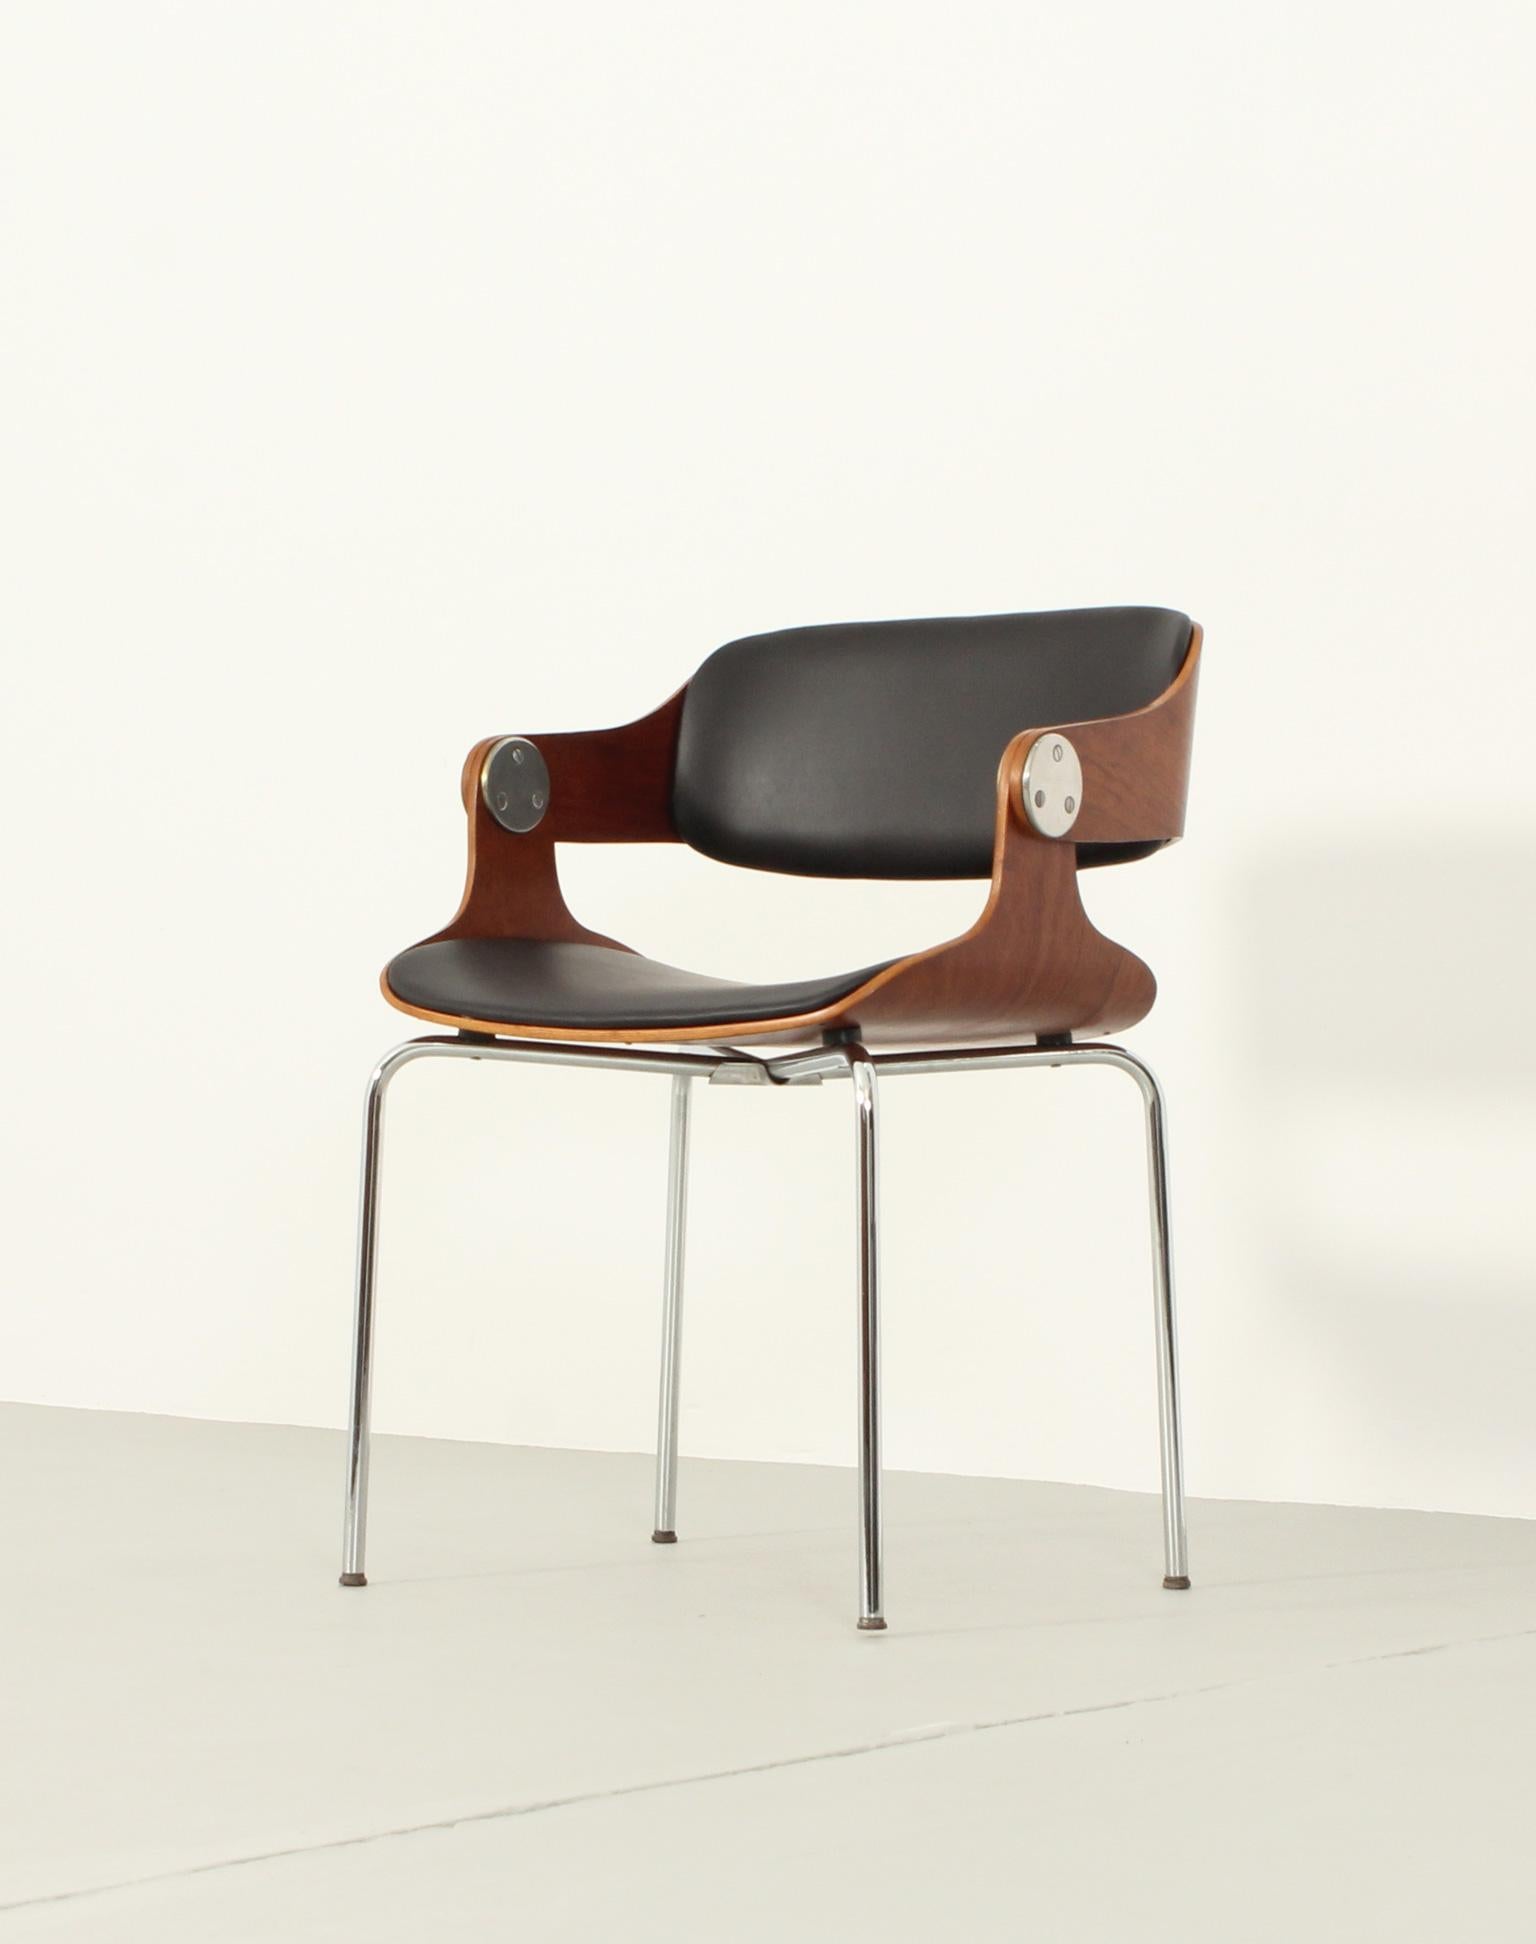 Ess- oder Arbeitsstuhl, entworfen 1965 von dem deutschen Architekten Eugen Schmidt. Sitz und Rückenlehne aus Sperrholz, verchromtes Metallgestell und neue Polsterung aus schwarzem Leder.